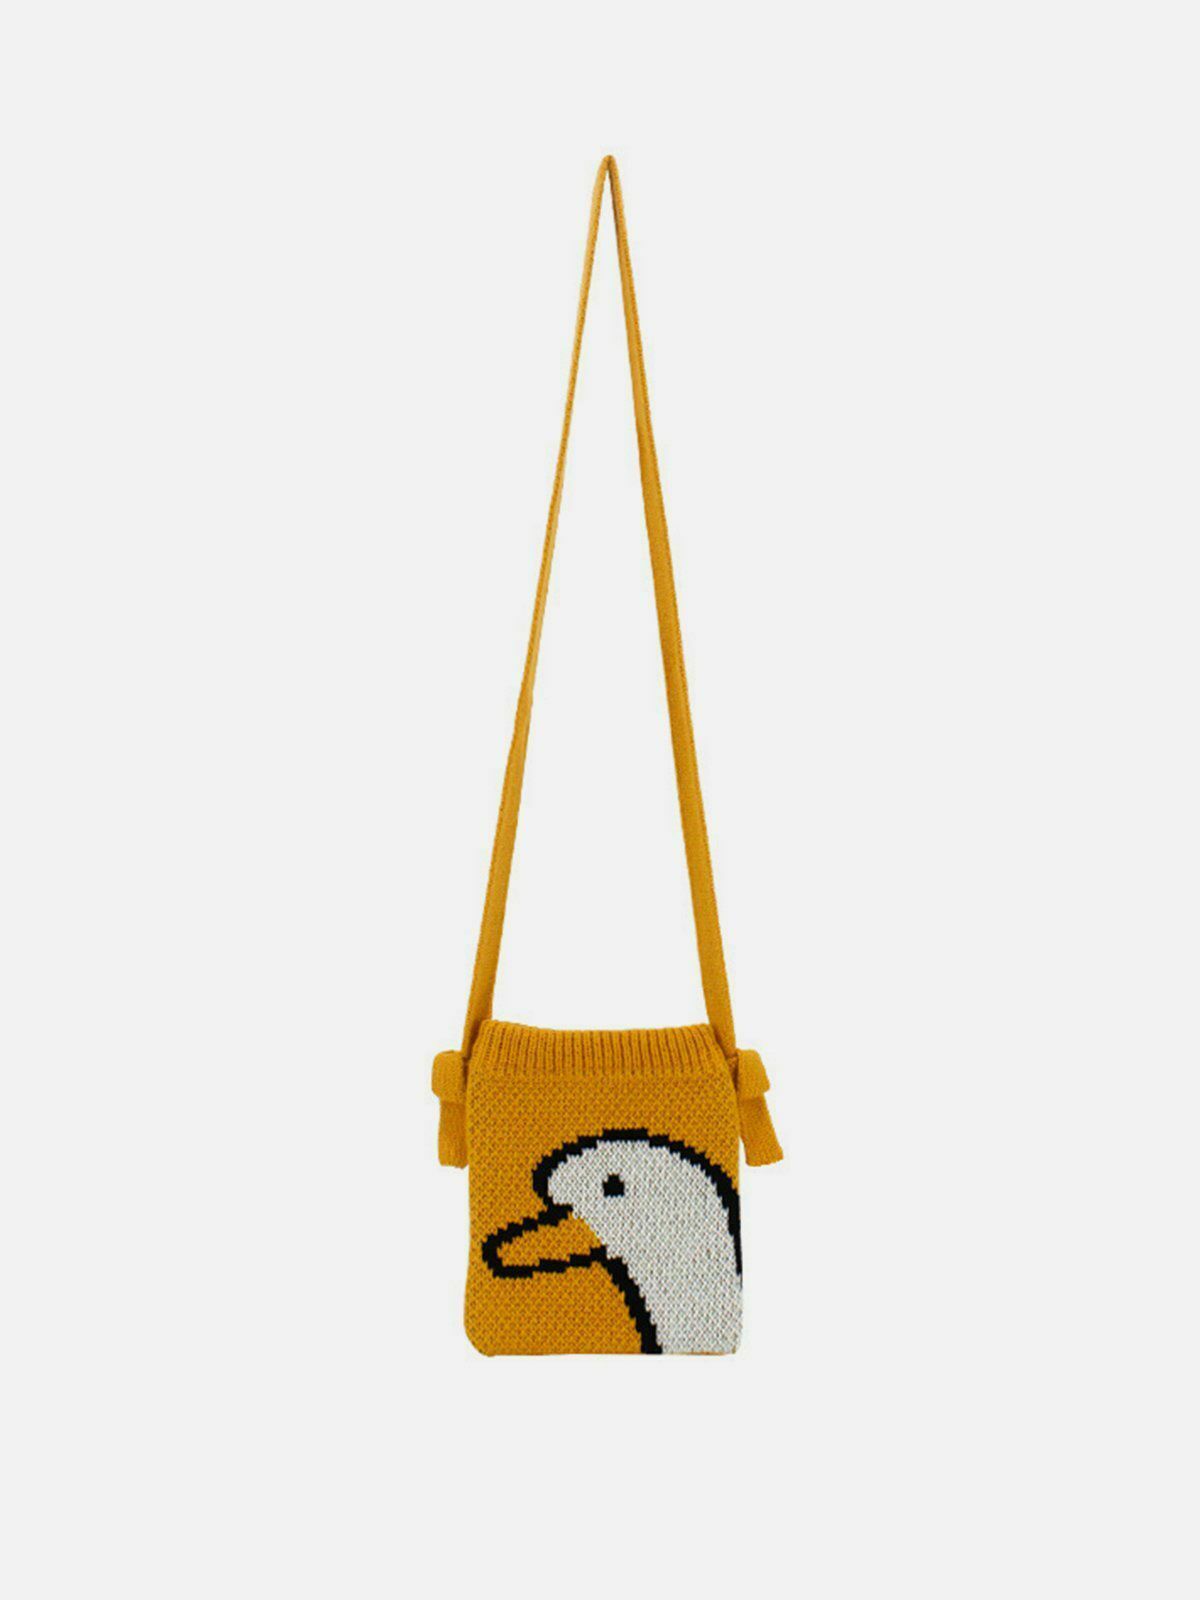 quirky duckling crossbody bag urban fashion accessory 1257